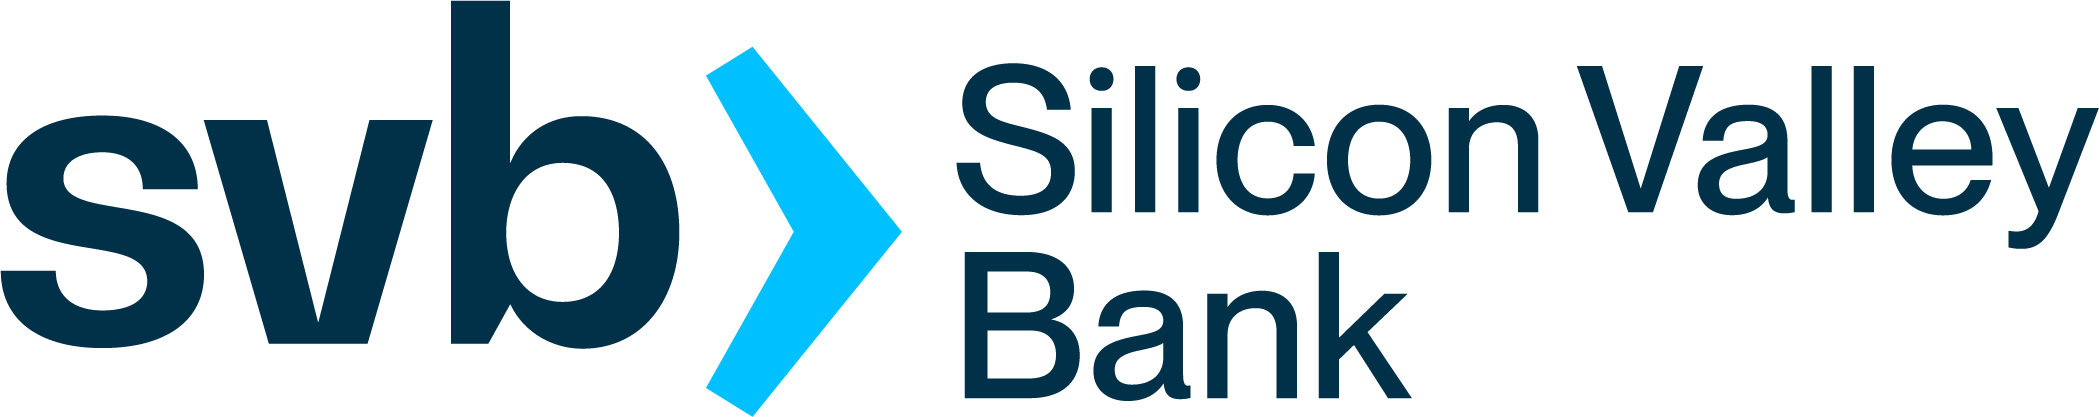 Silicon Valley Bank's logo